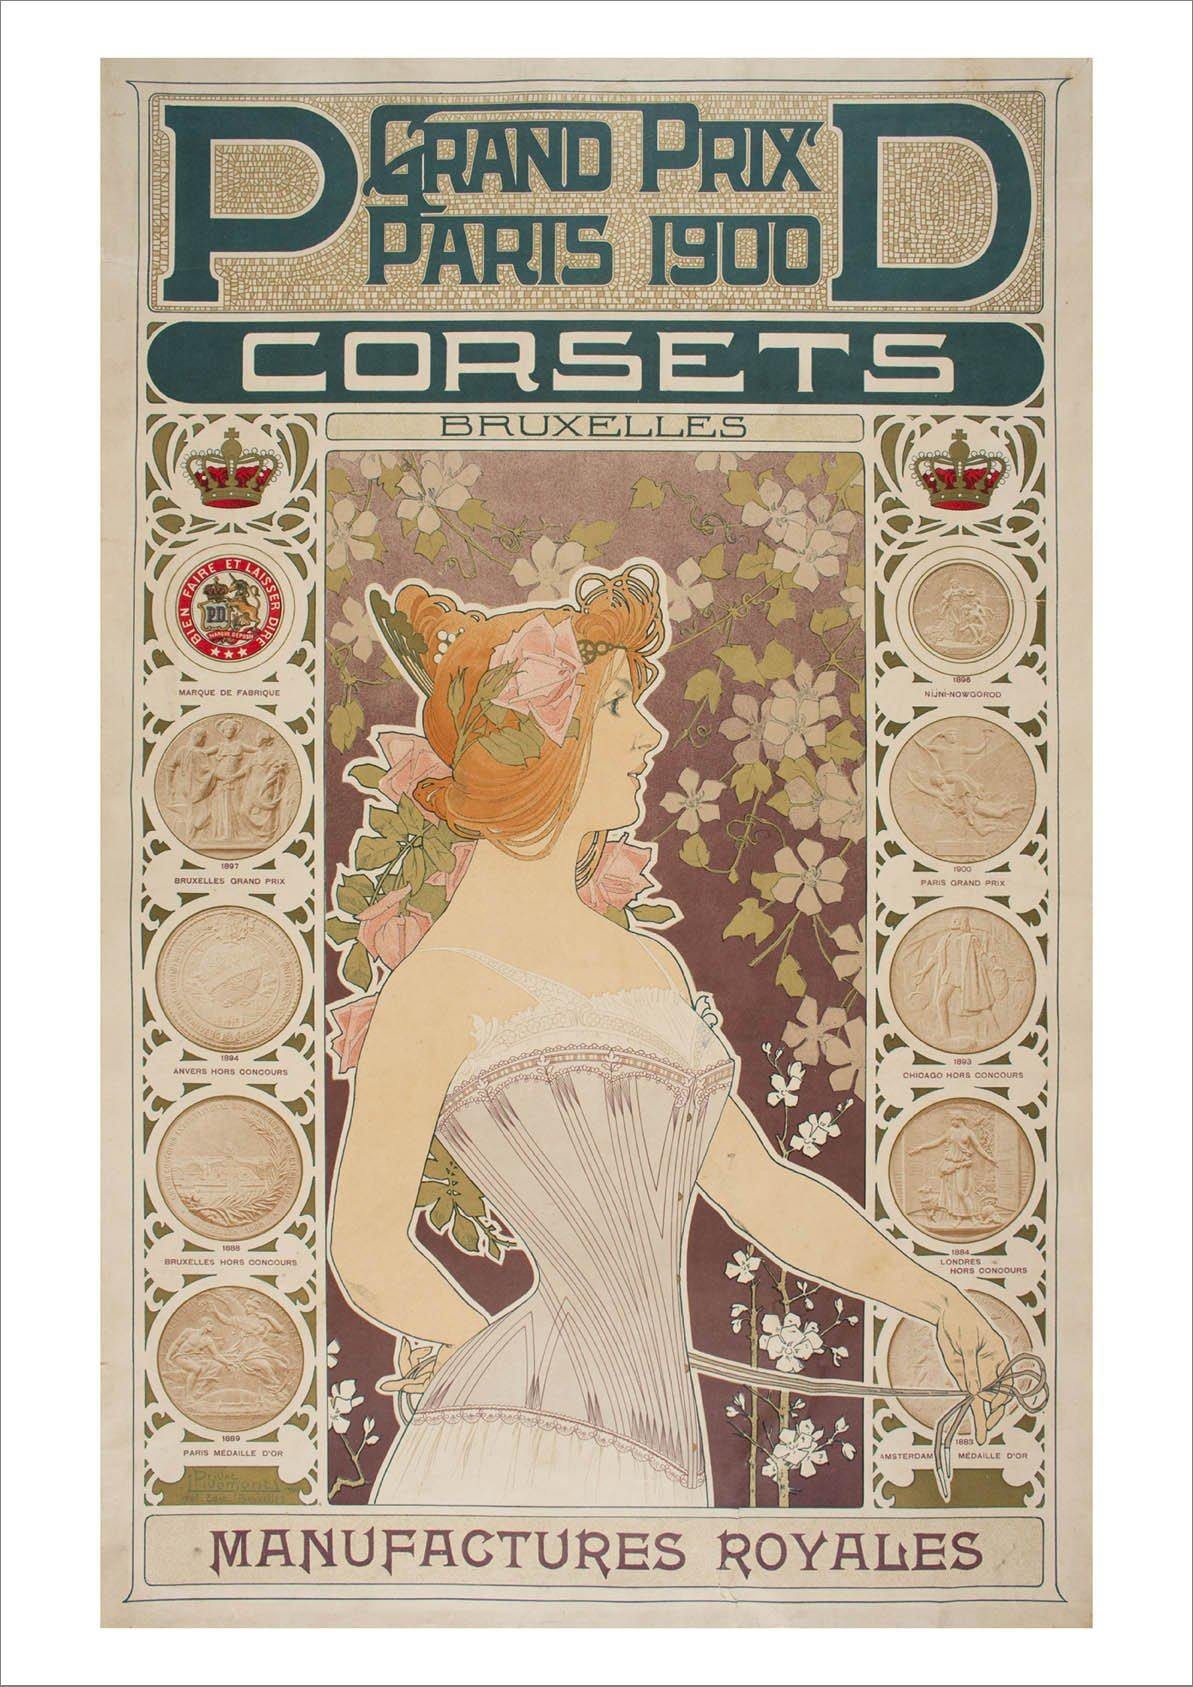 CORSETS POSTER: Vintage Paris Advert Art Print - Pimlico Prints